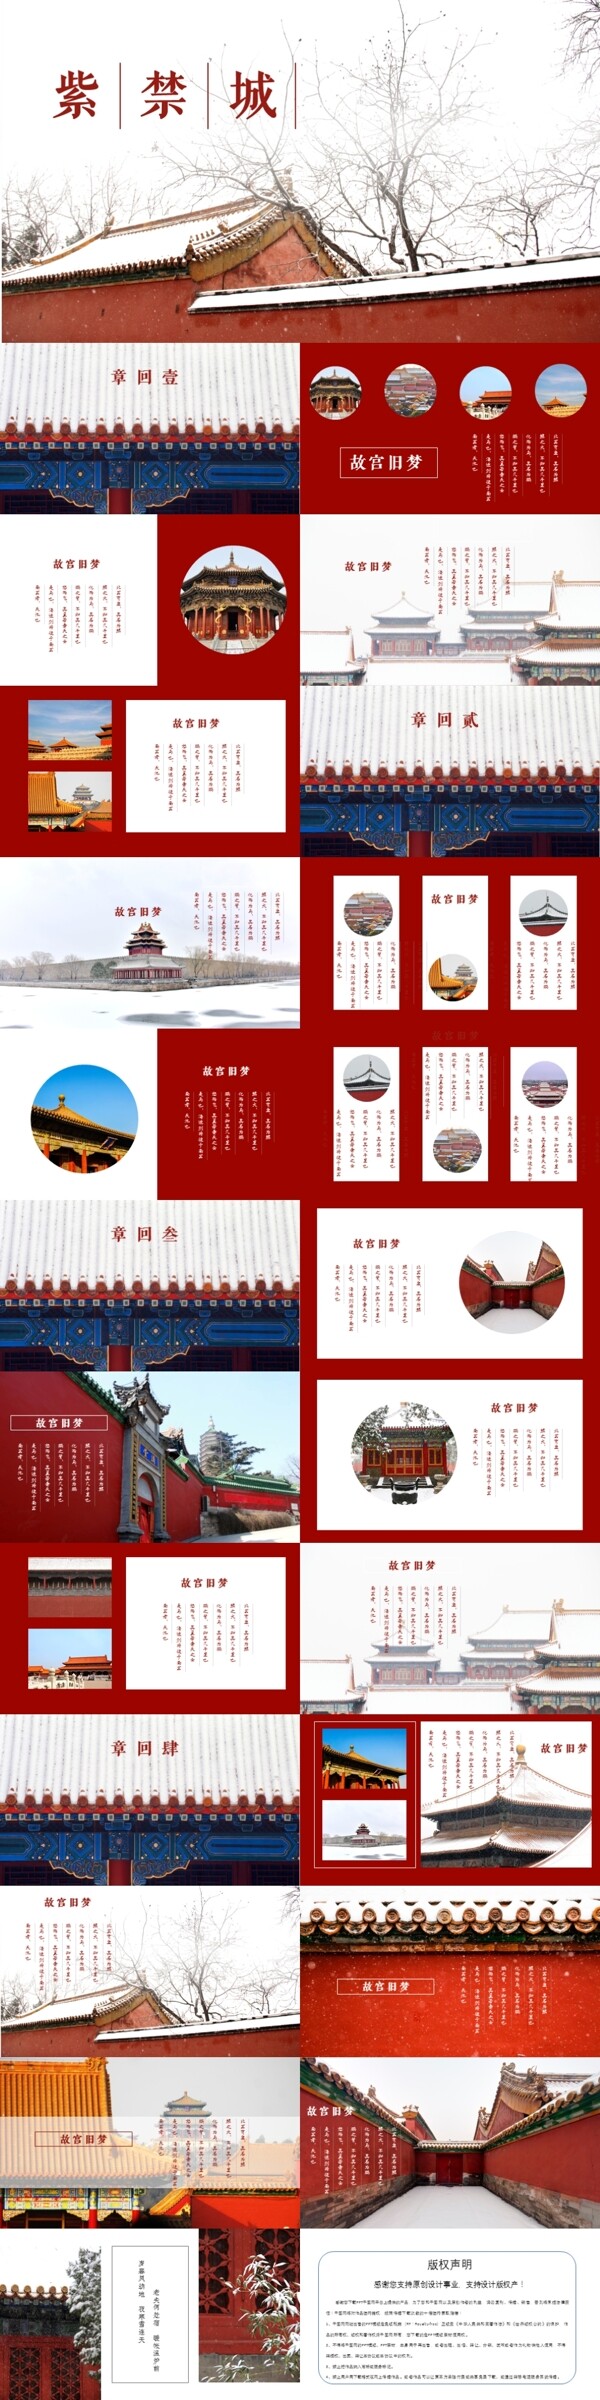 紫禁城红色故宫文艺杂志风旅游相册宣传PPT模板